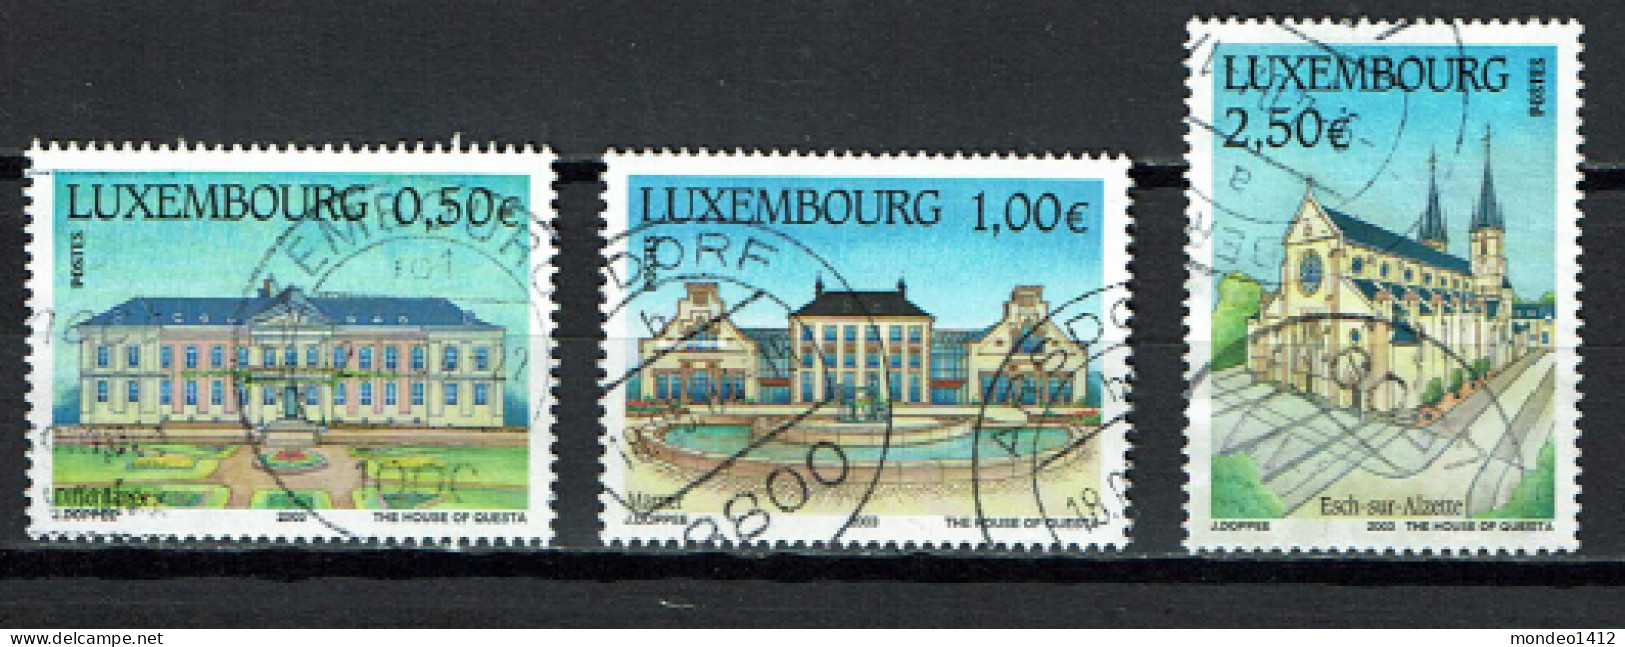 Luxembourg 2003 - YT 1551/1553 - Tourisme, Tourism - Maison De Soins, Château De Mamer, Église Saint-Joseph - Usados